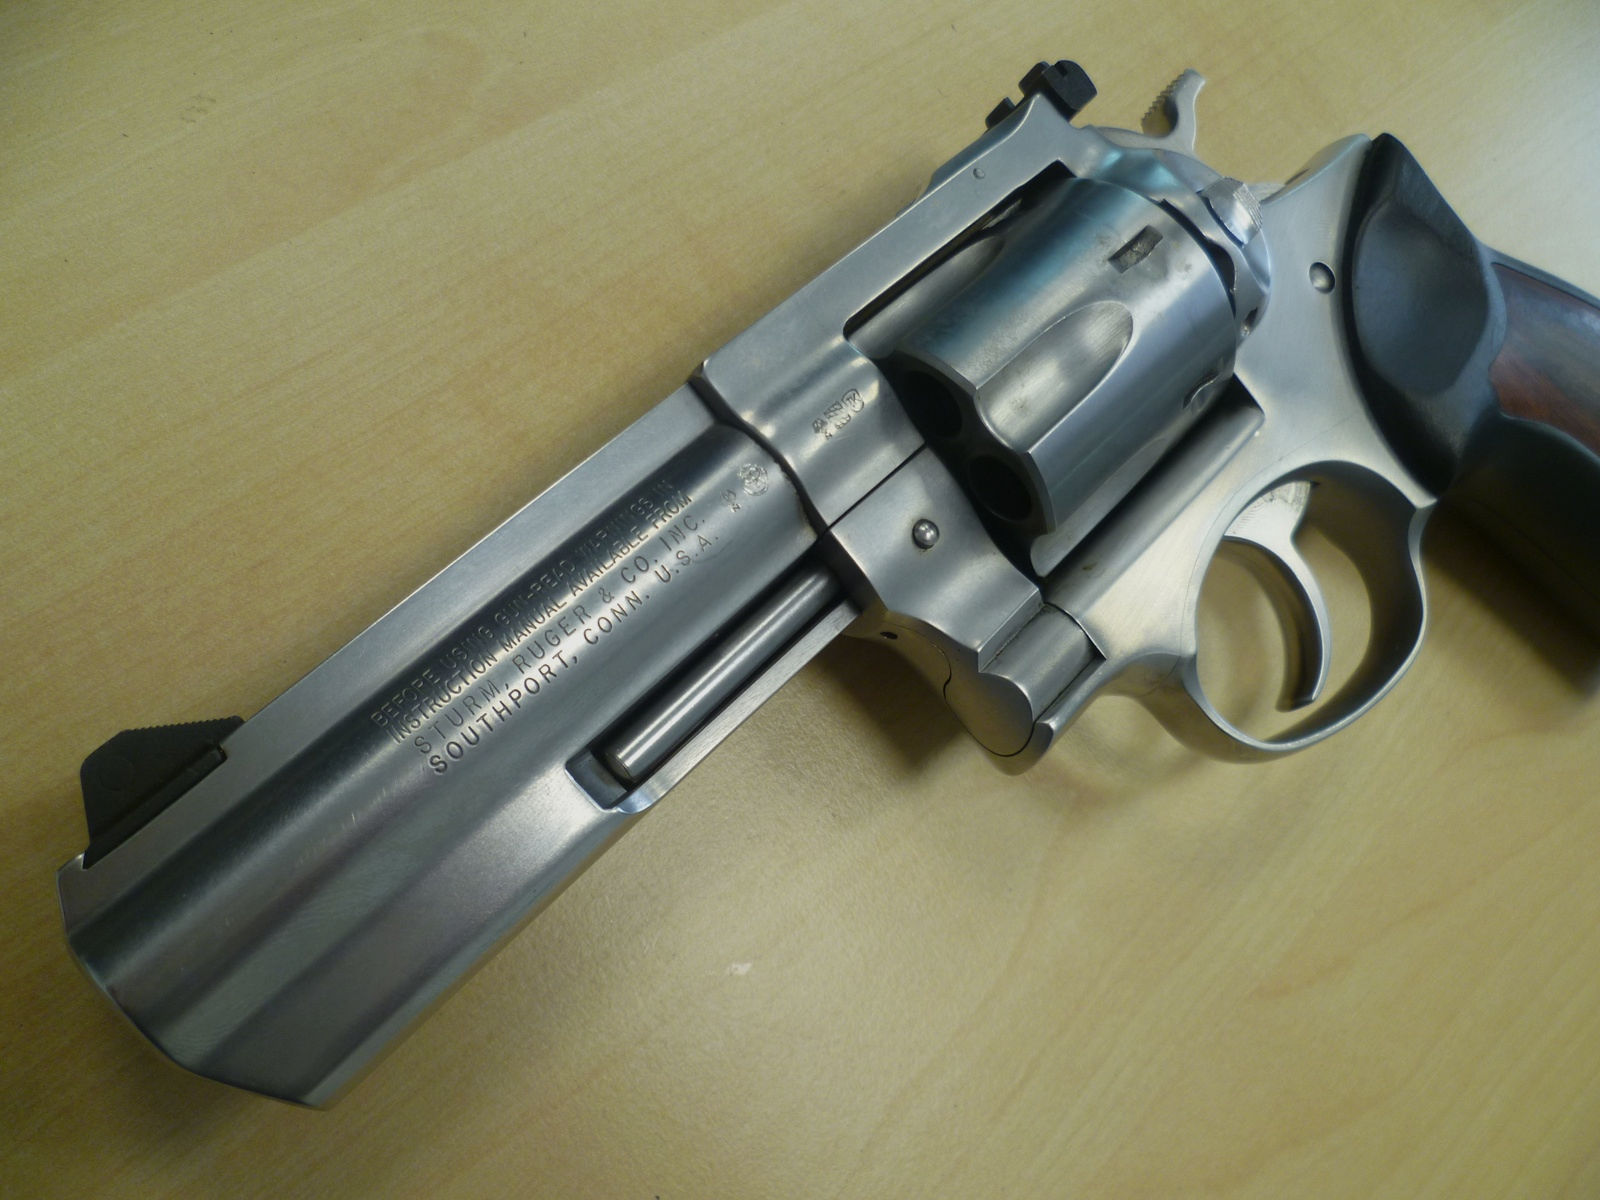 Revolver Ruger GP100  -  .357 Magnum